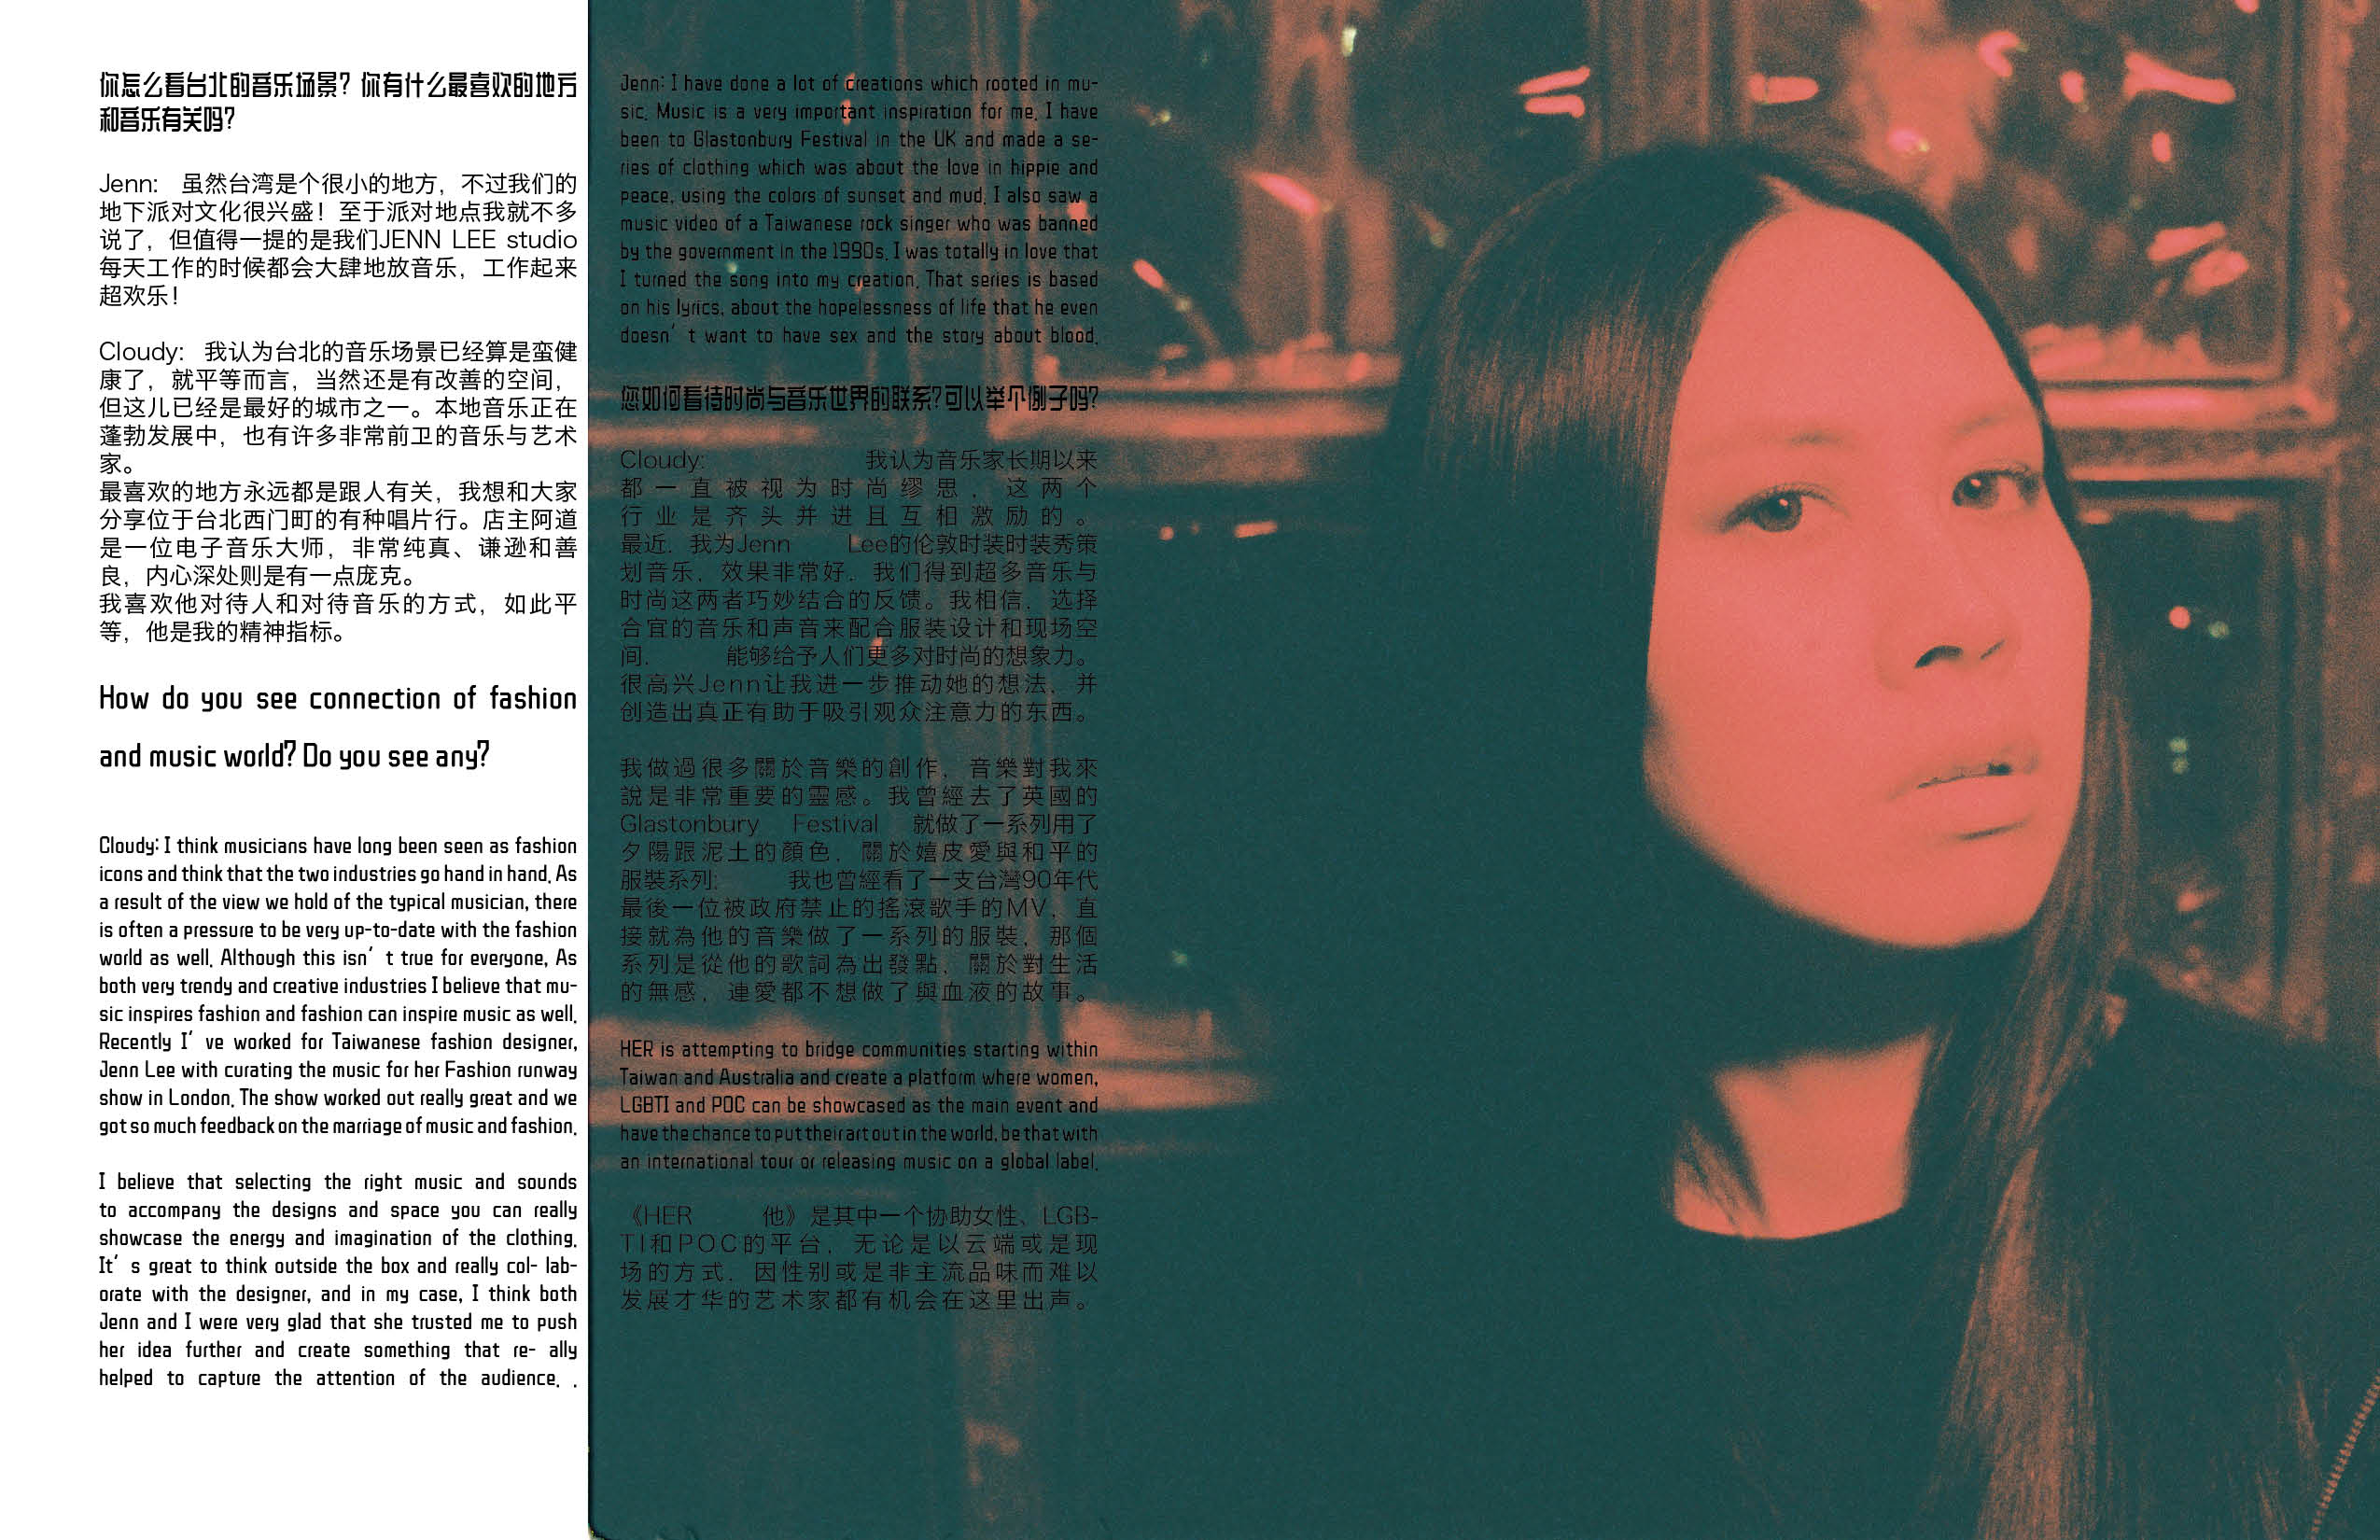 MEET: HER X KEYI MAGAZINE in Taipei by Izabella Chrobok & Grzegorz Bacinski with Cloudy Ku & Jenn Lee